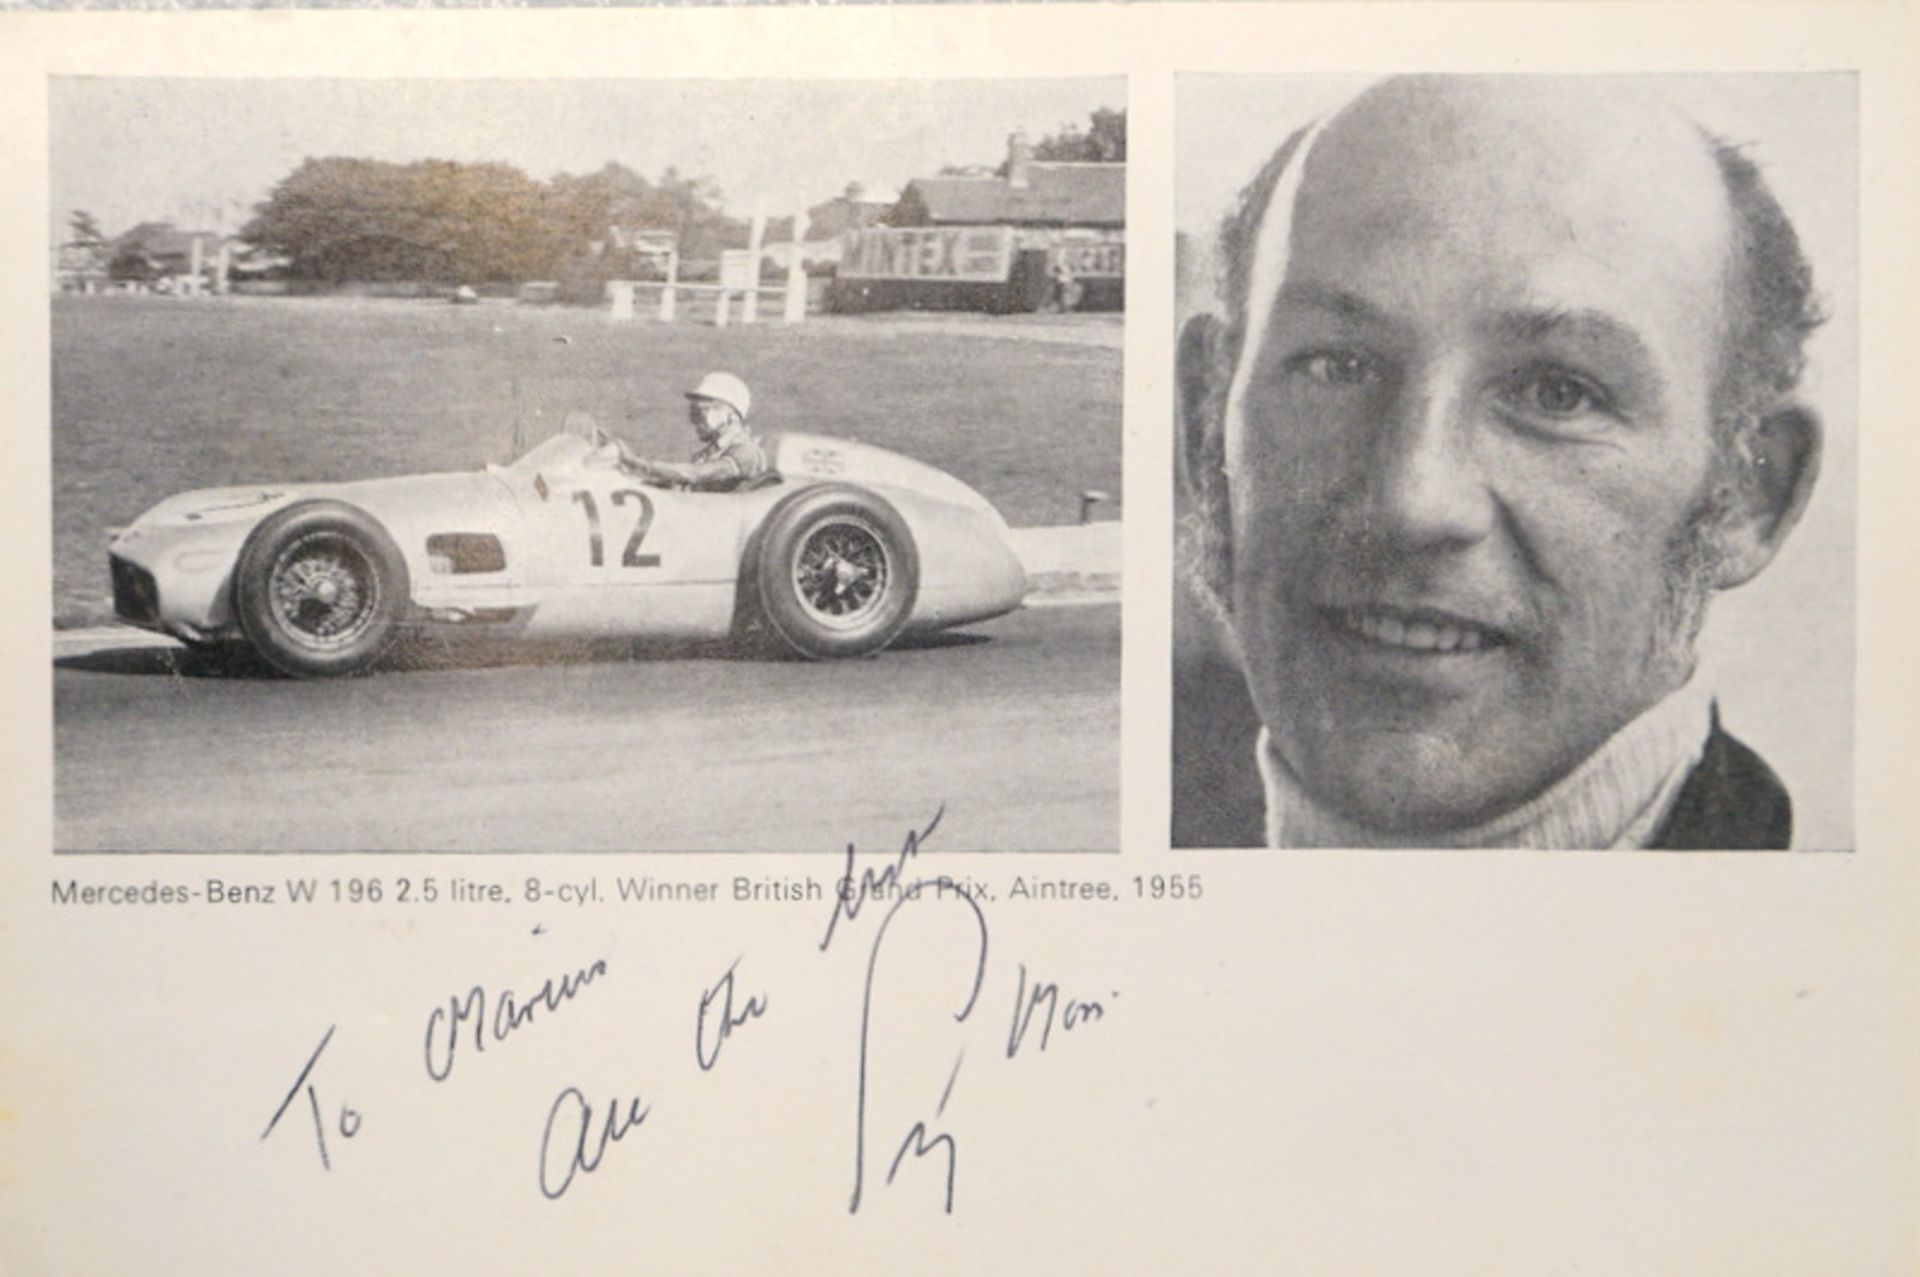 Handsignierte Autogrammkarte der Formel 1 Legende Stirling Moss